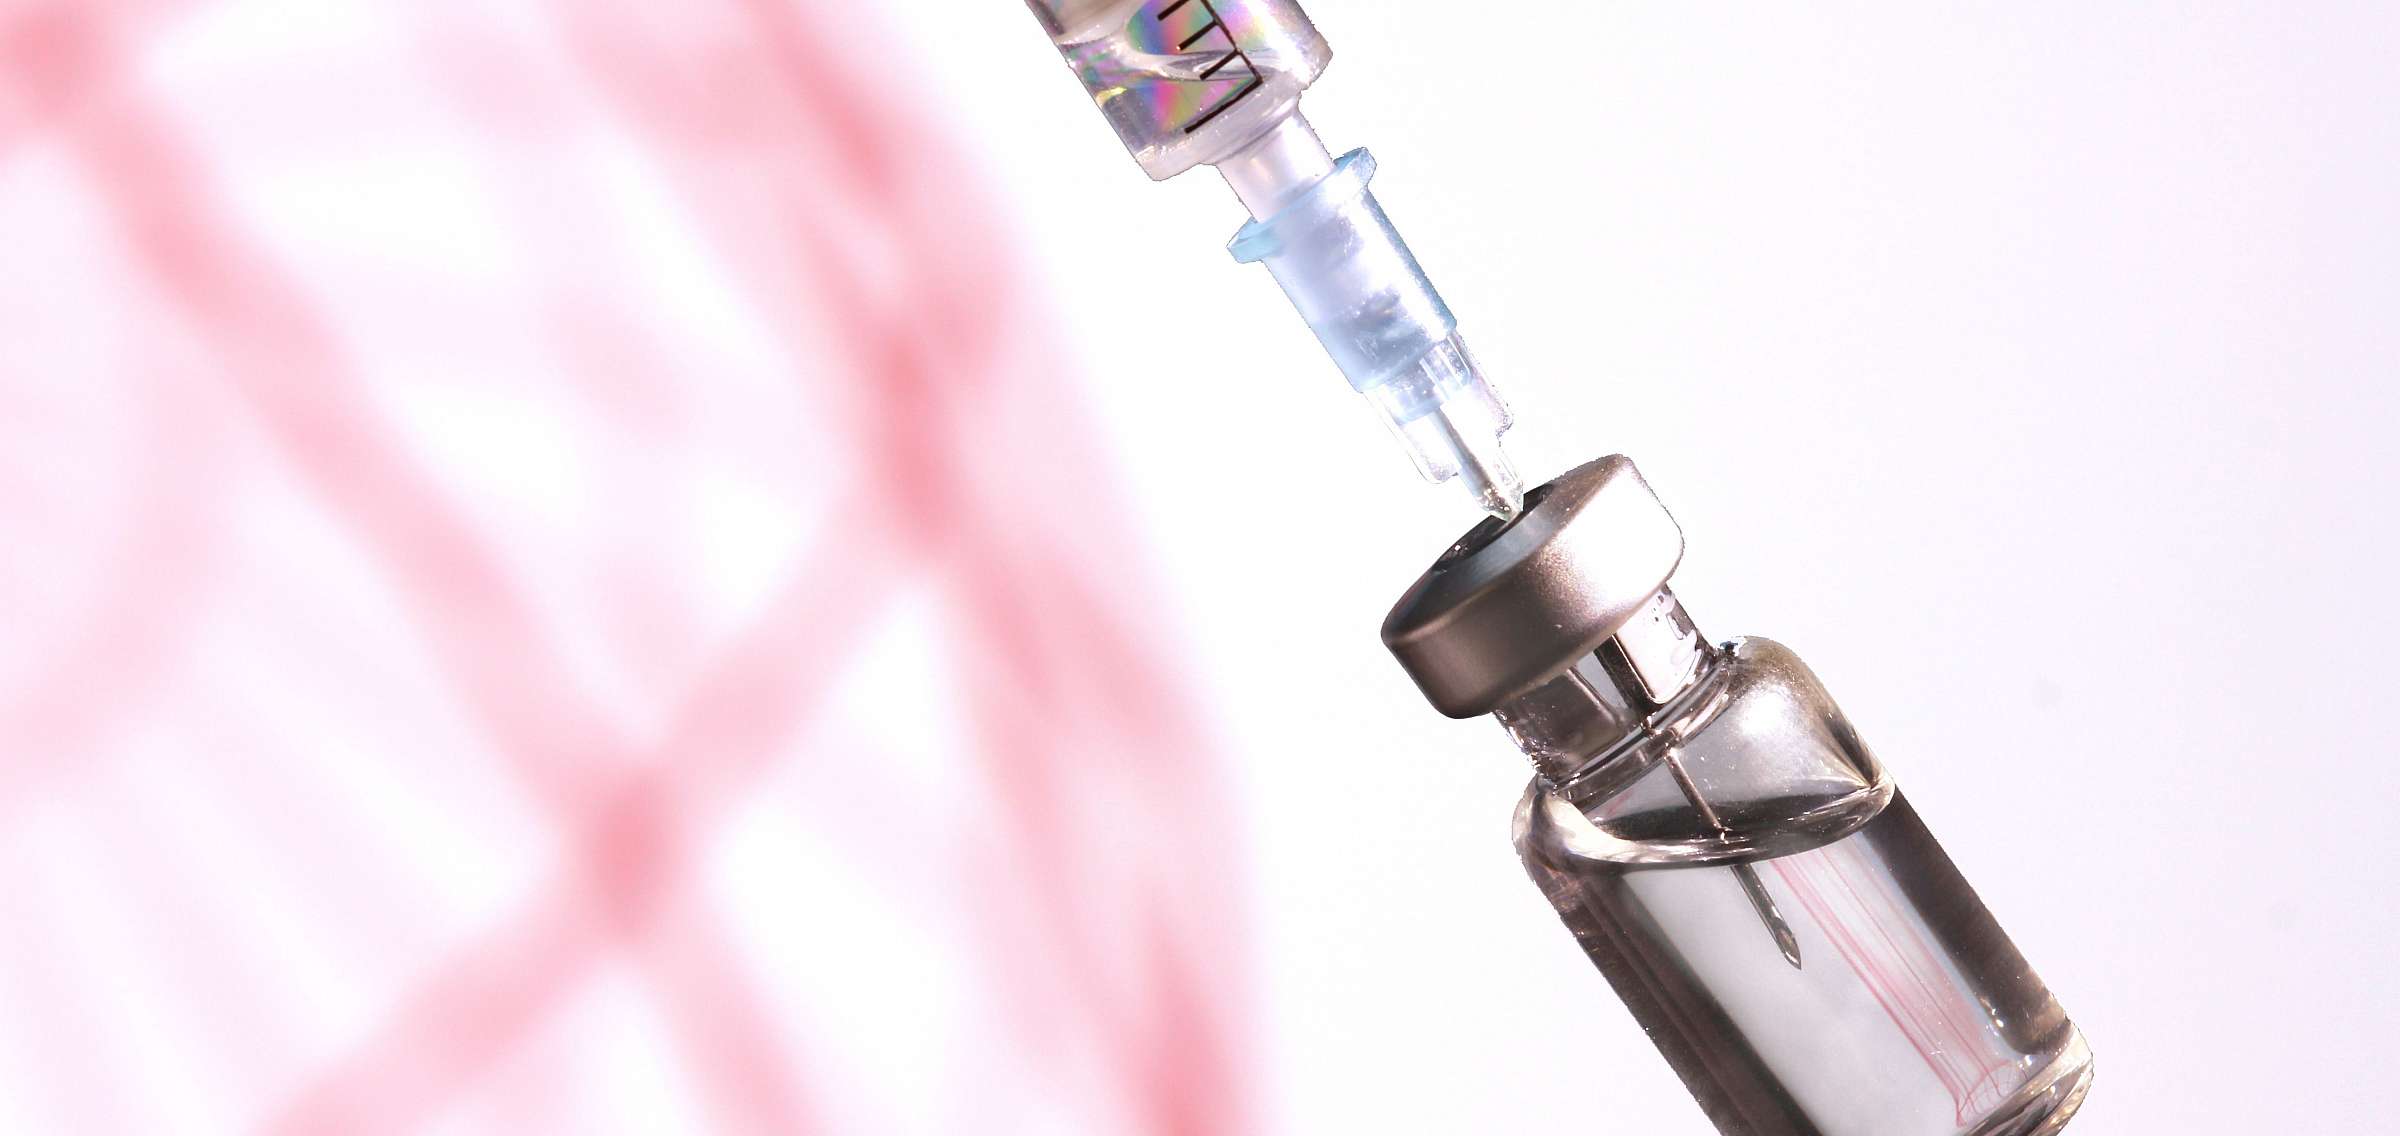 Background image: Syringe Bottle